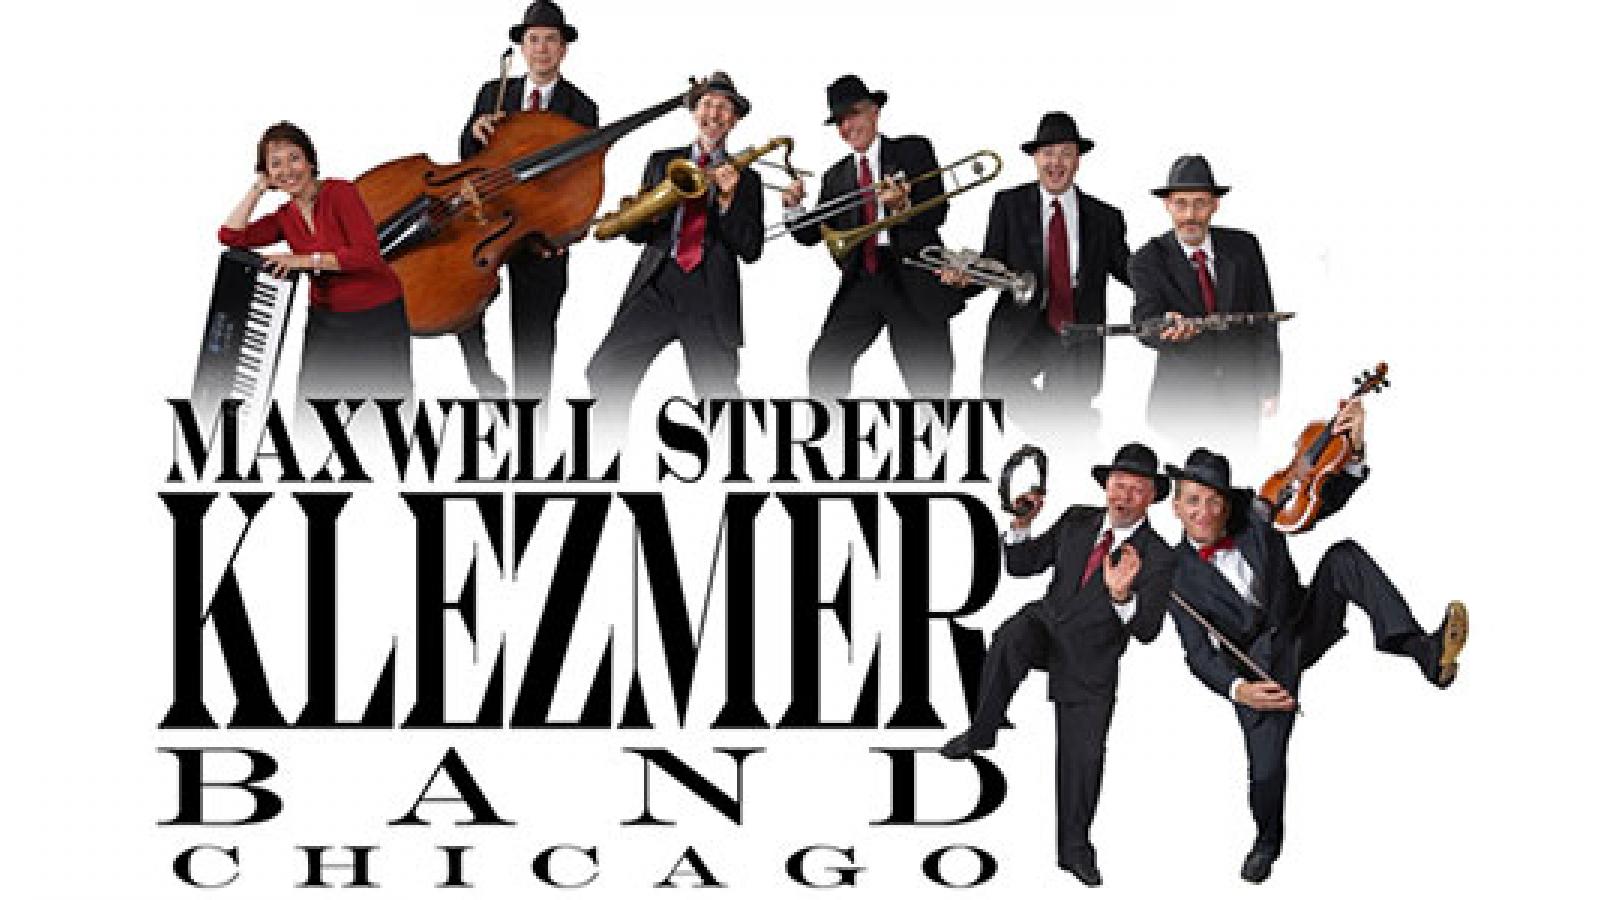 Maxwell Street Klezmer Band